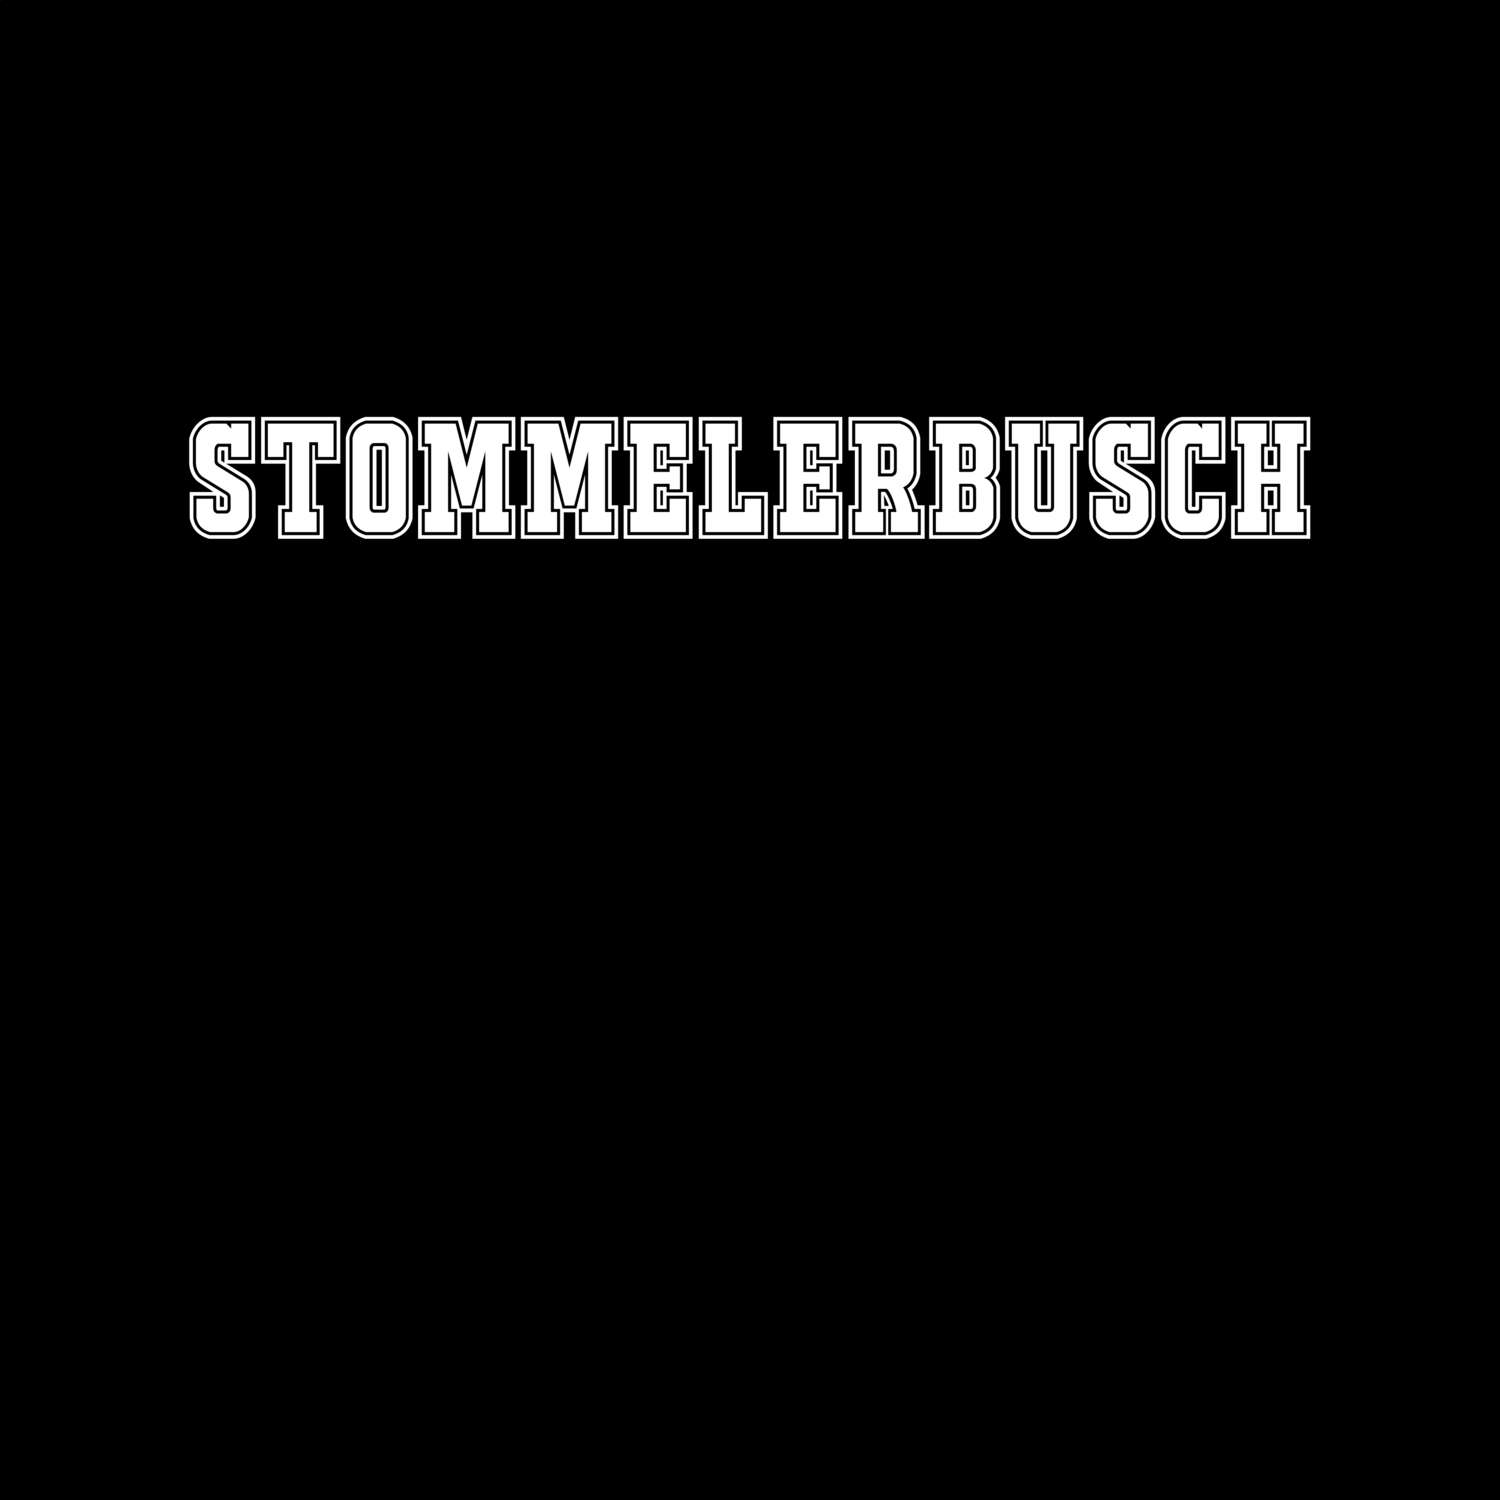 Stommelerbusch T-Shirt »Classic«